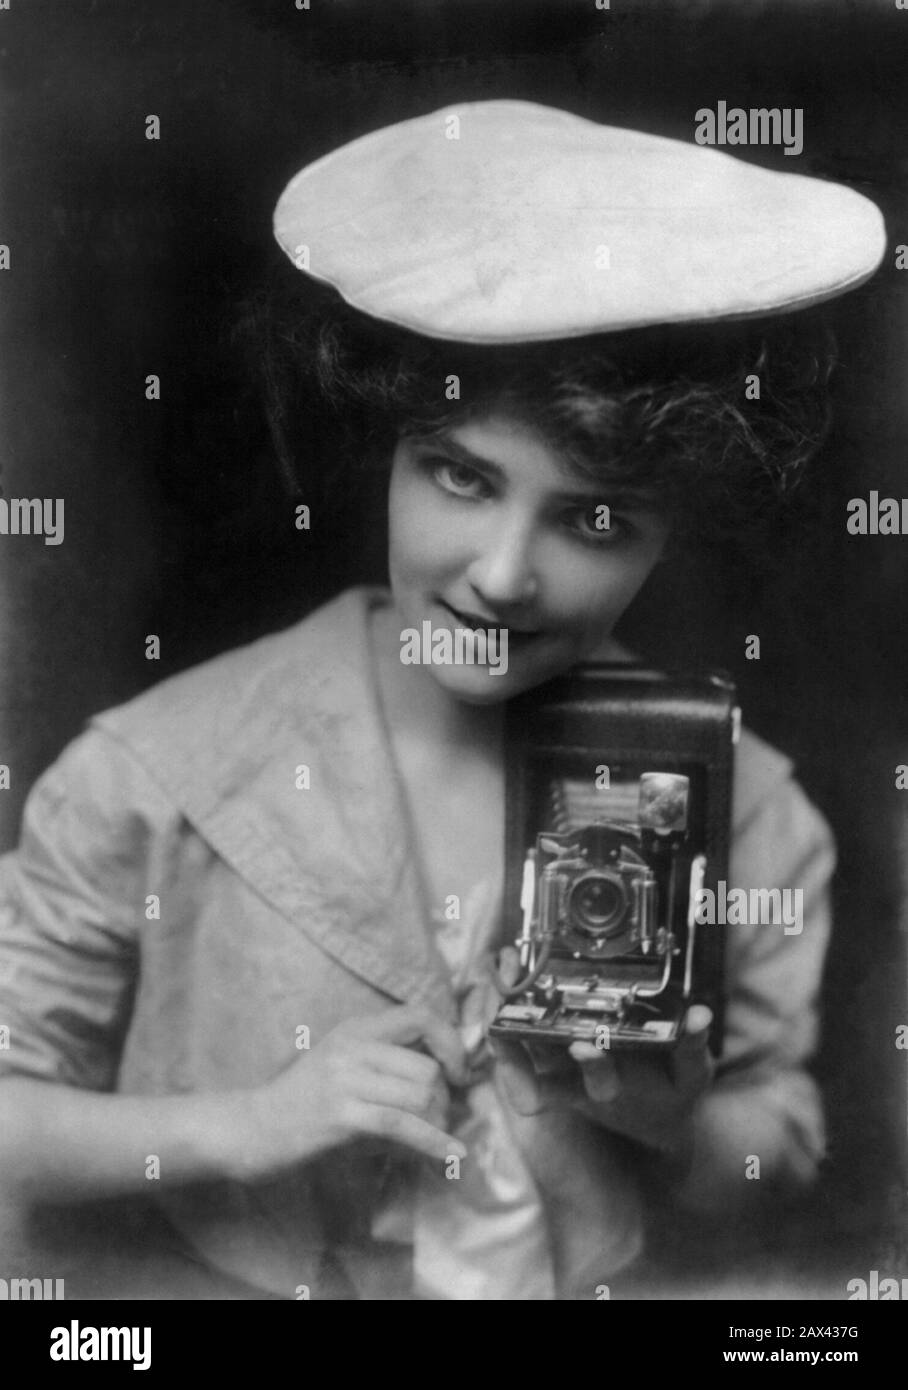 1909, USA : THE KODAK GIRL . Woman photographer with his camera   - STATI UNITI D' AMERICA -  fotografo - fotografi - fotografa - BELLE EPOQUE - FOTOREPORTER - PHOTOREPORTERS - photographer - PHOTO REPORTERS - macchina fotografica - macchine fotografiche - hat - cappello - HISTORY - FOTO STORICA STORICHE - Paparazzo - paparazzi - FOTO D' ATTUALITA'  - colletto - collar -  STORIA DELLA FOTOGRAFIA - FASHION - MODA - NOVECENTO - '900 - 900's - 1910's ----  Archivio GBB Stock Photo